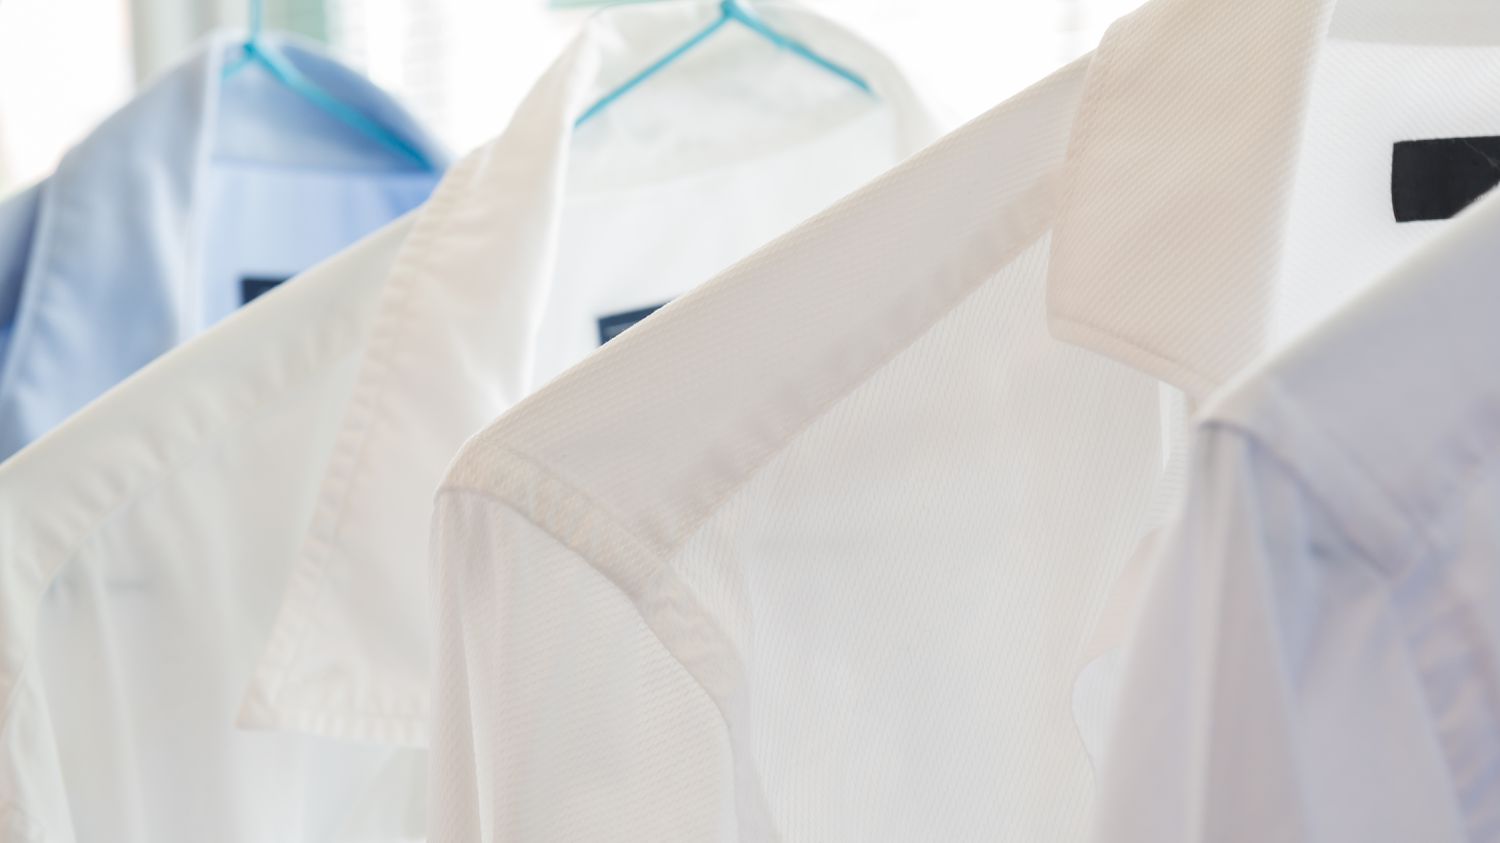 Camisas brancas e azuis em uma lavanderia a seco